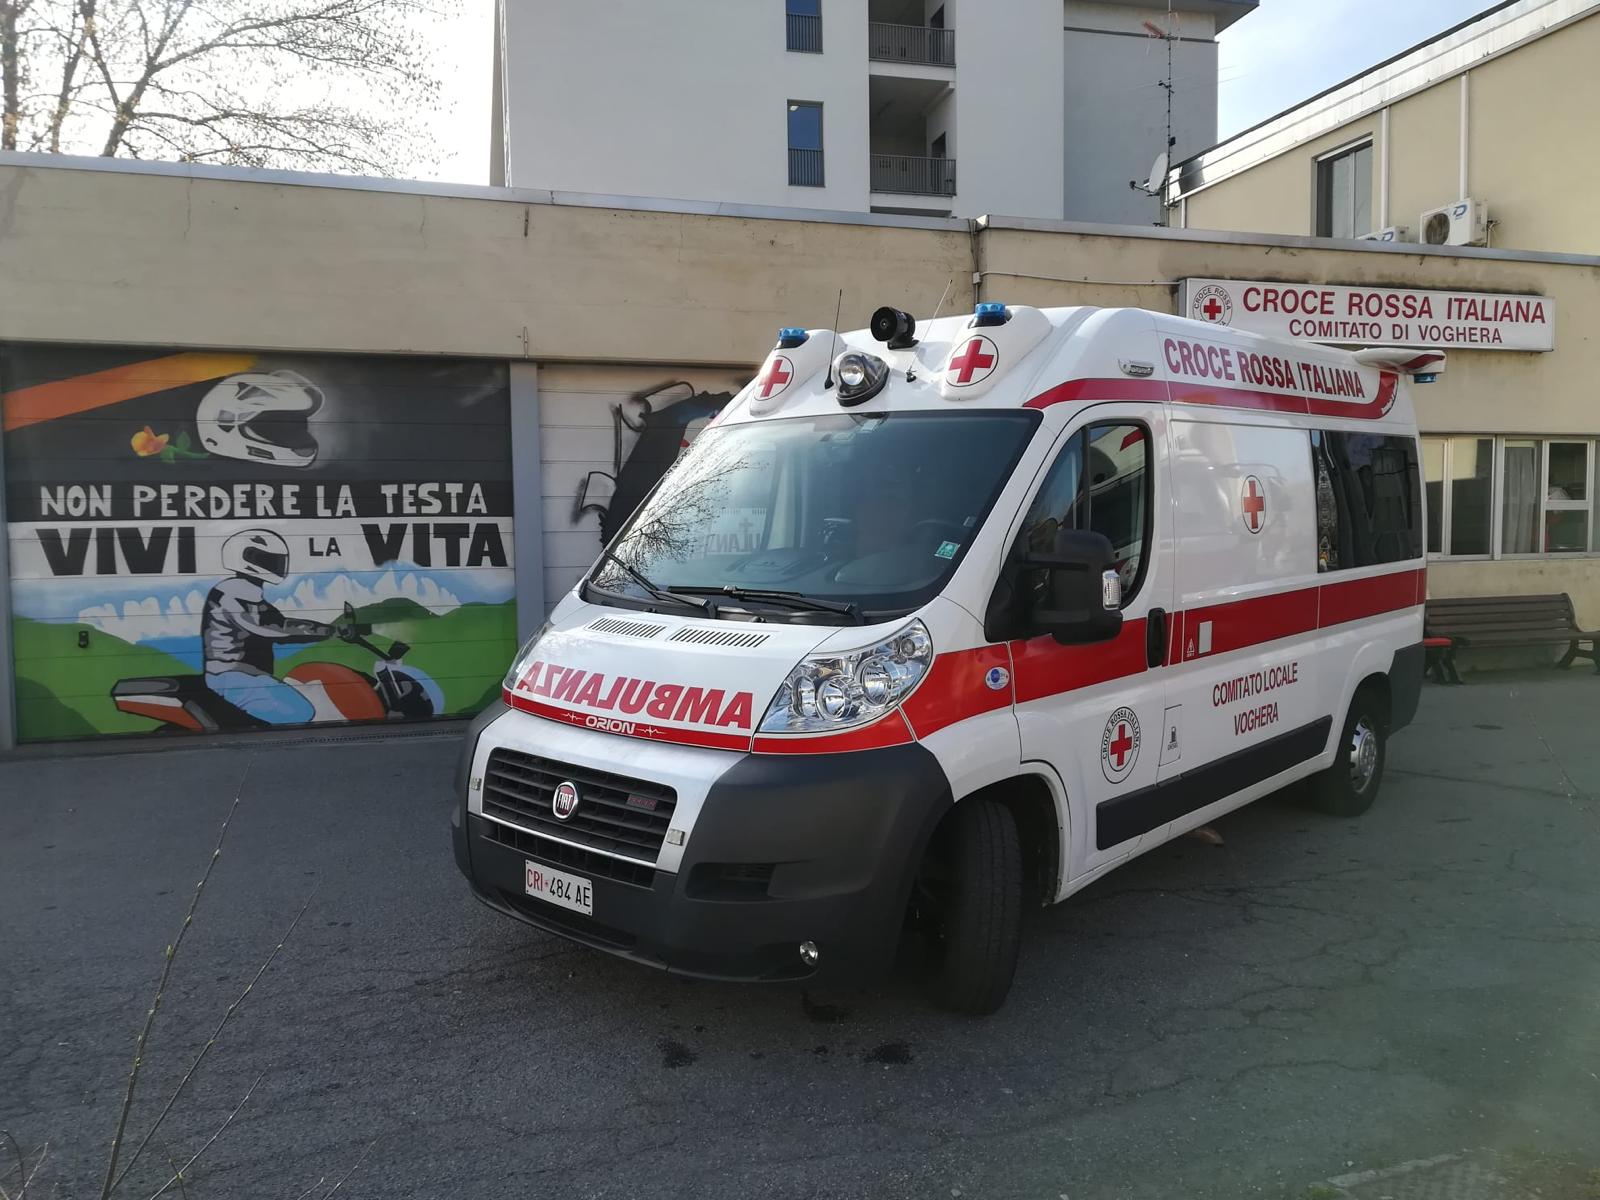 01_Nuova-ambulanza-CRI-Voghera-2020